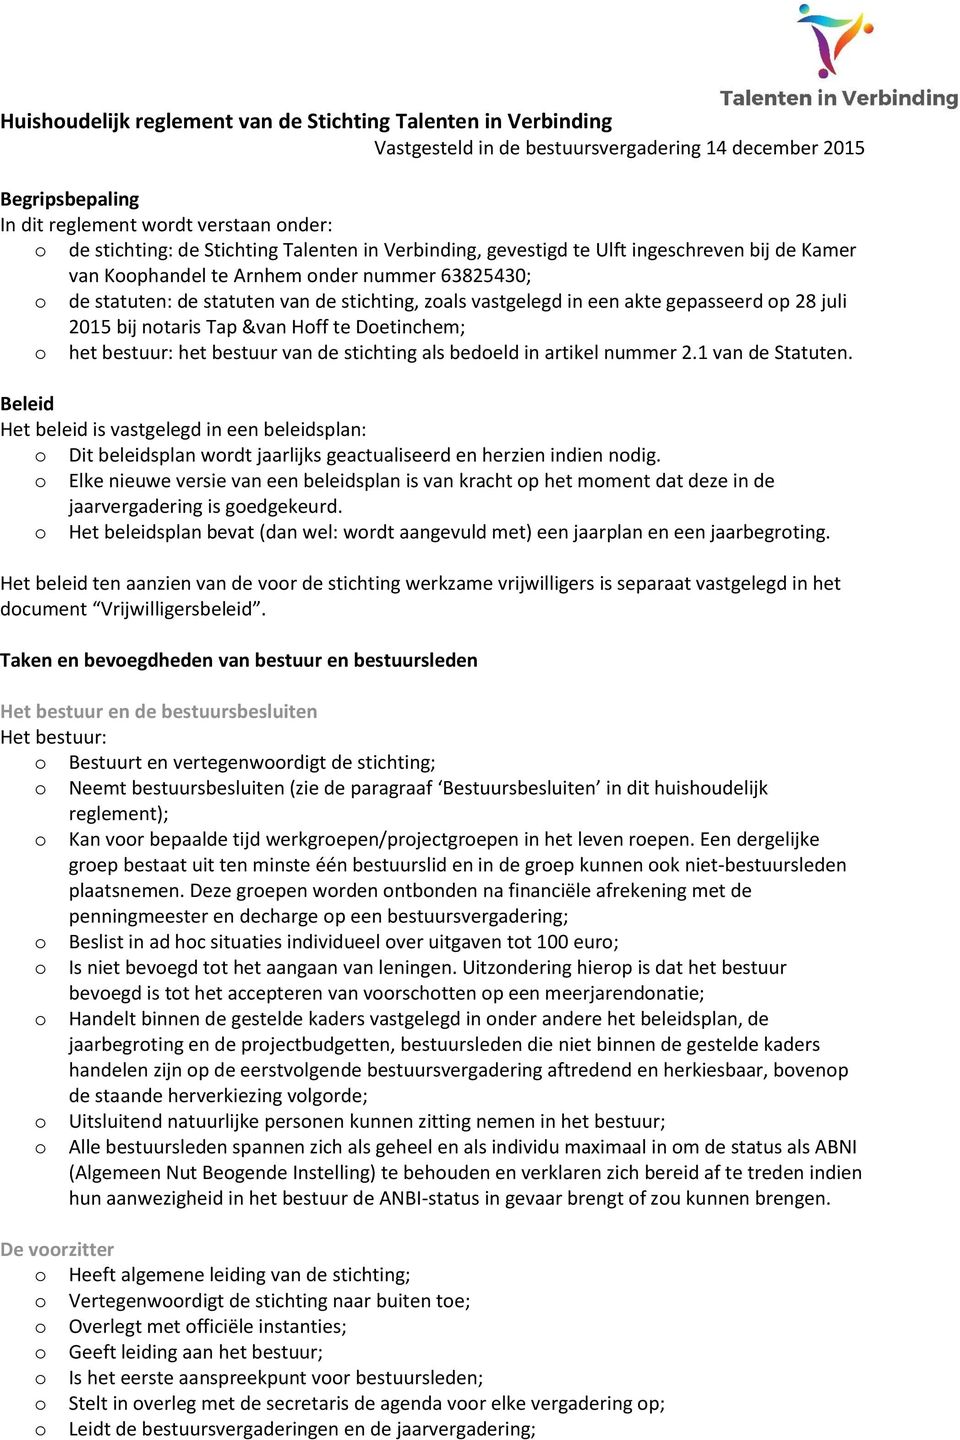 juli 2015 bij ntaris Tap &van Hff te Detinchem; het bestuur: het bestuur van de stichting als bedeld in artikel nummer 2.1 van de Statuten.